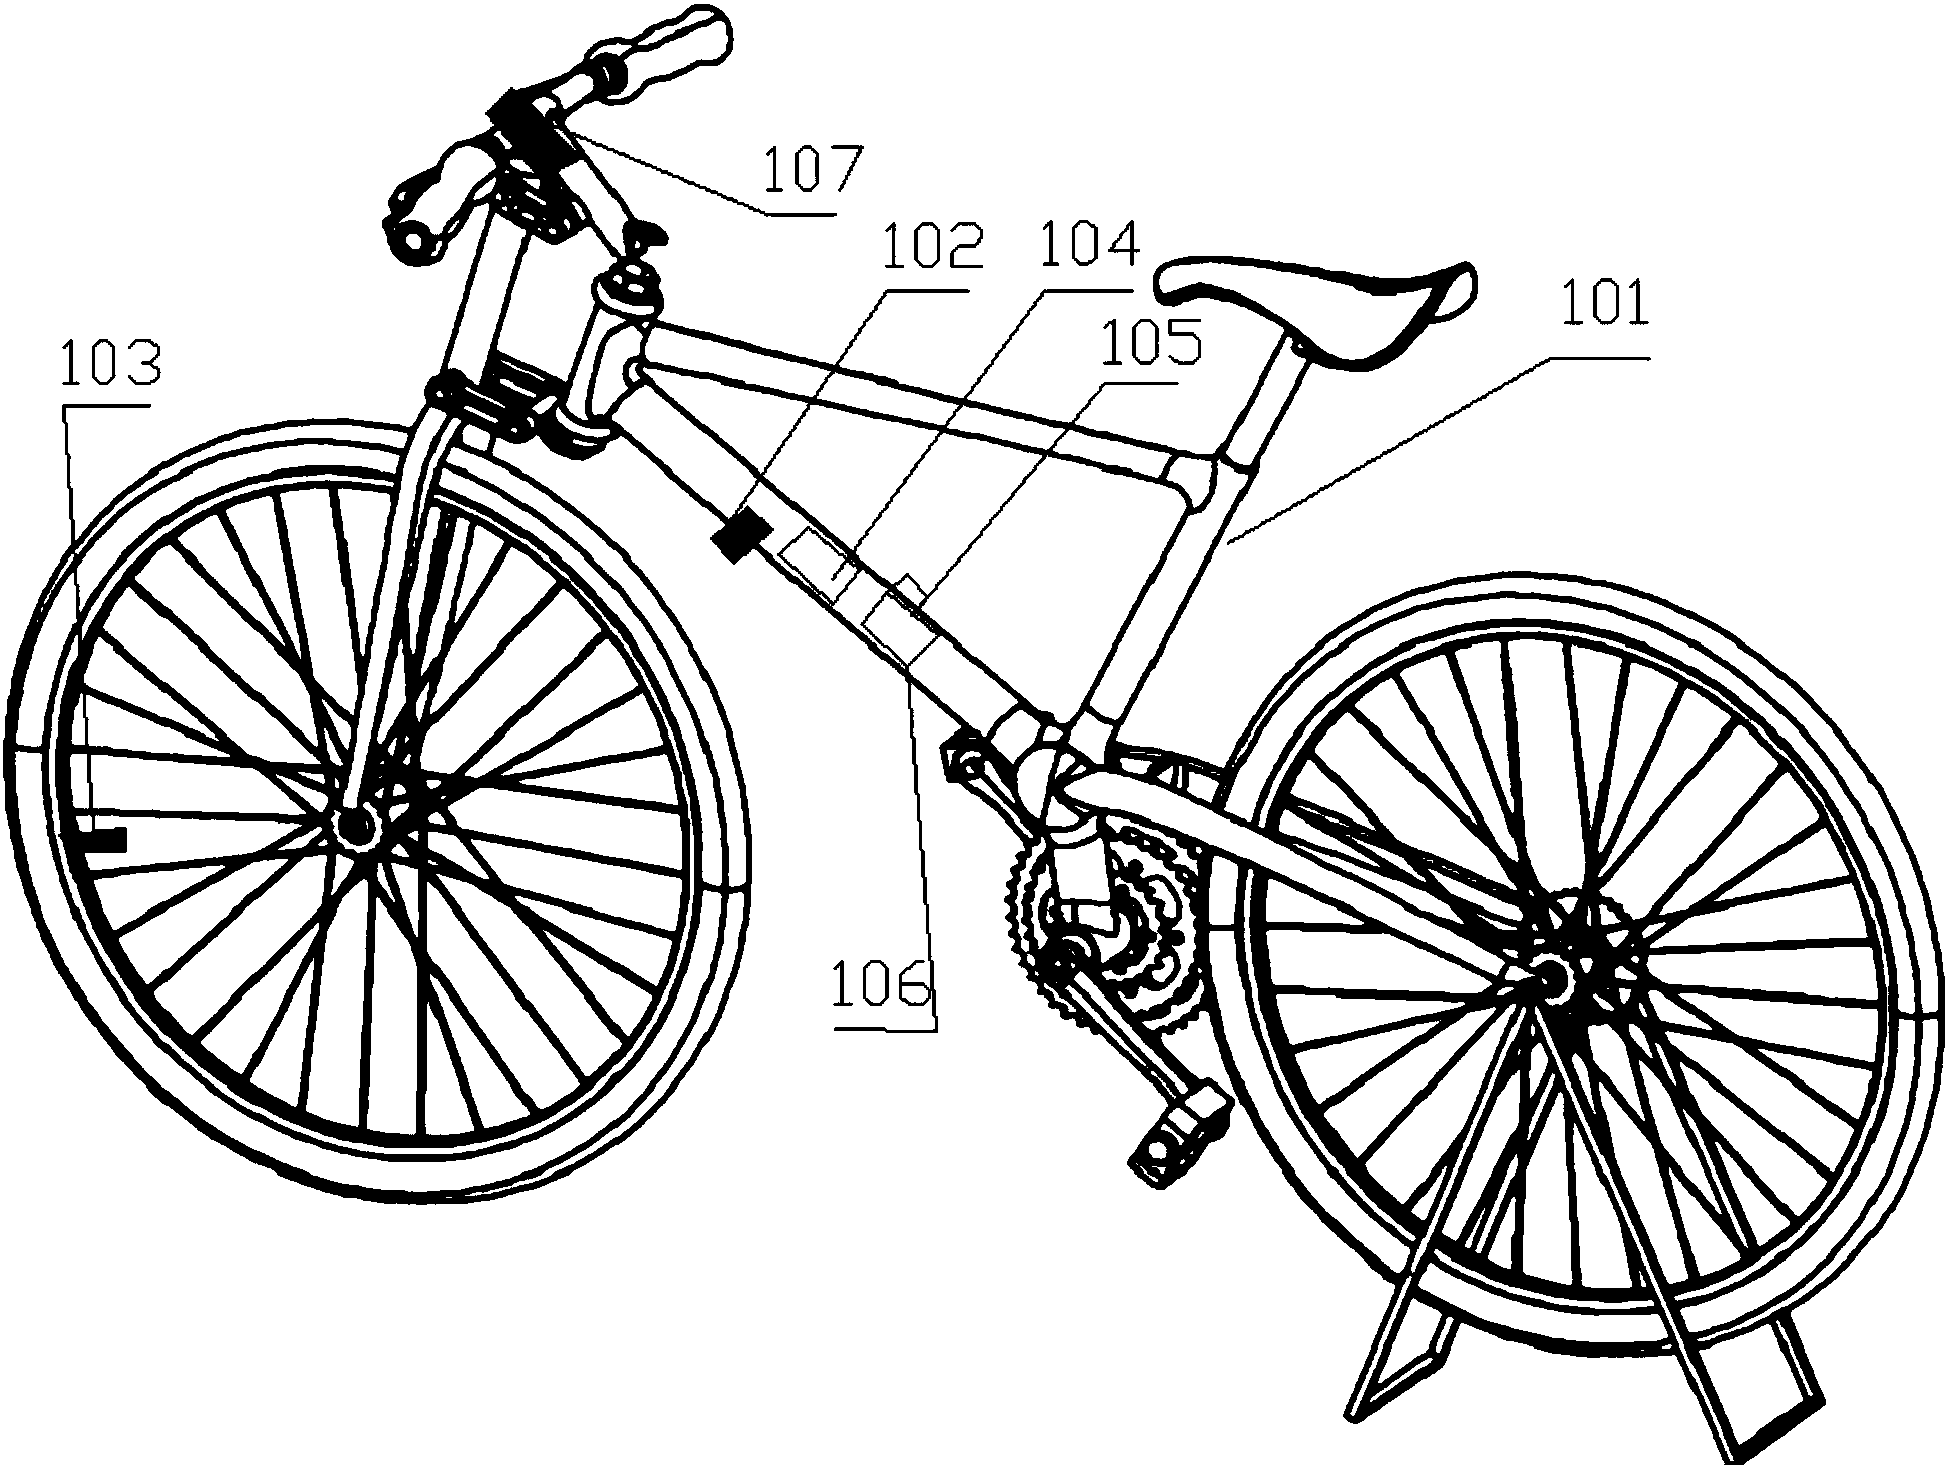 本发明创造涉及一种具有记录功能的自行车,包括自行车本体和测量单元